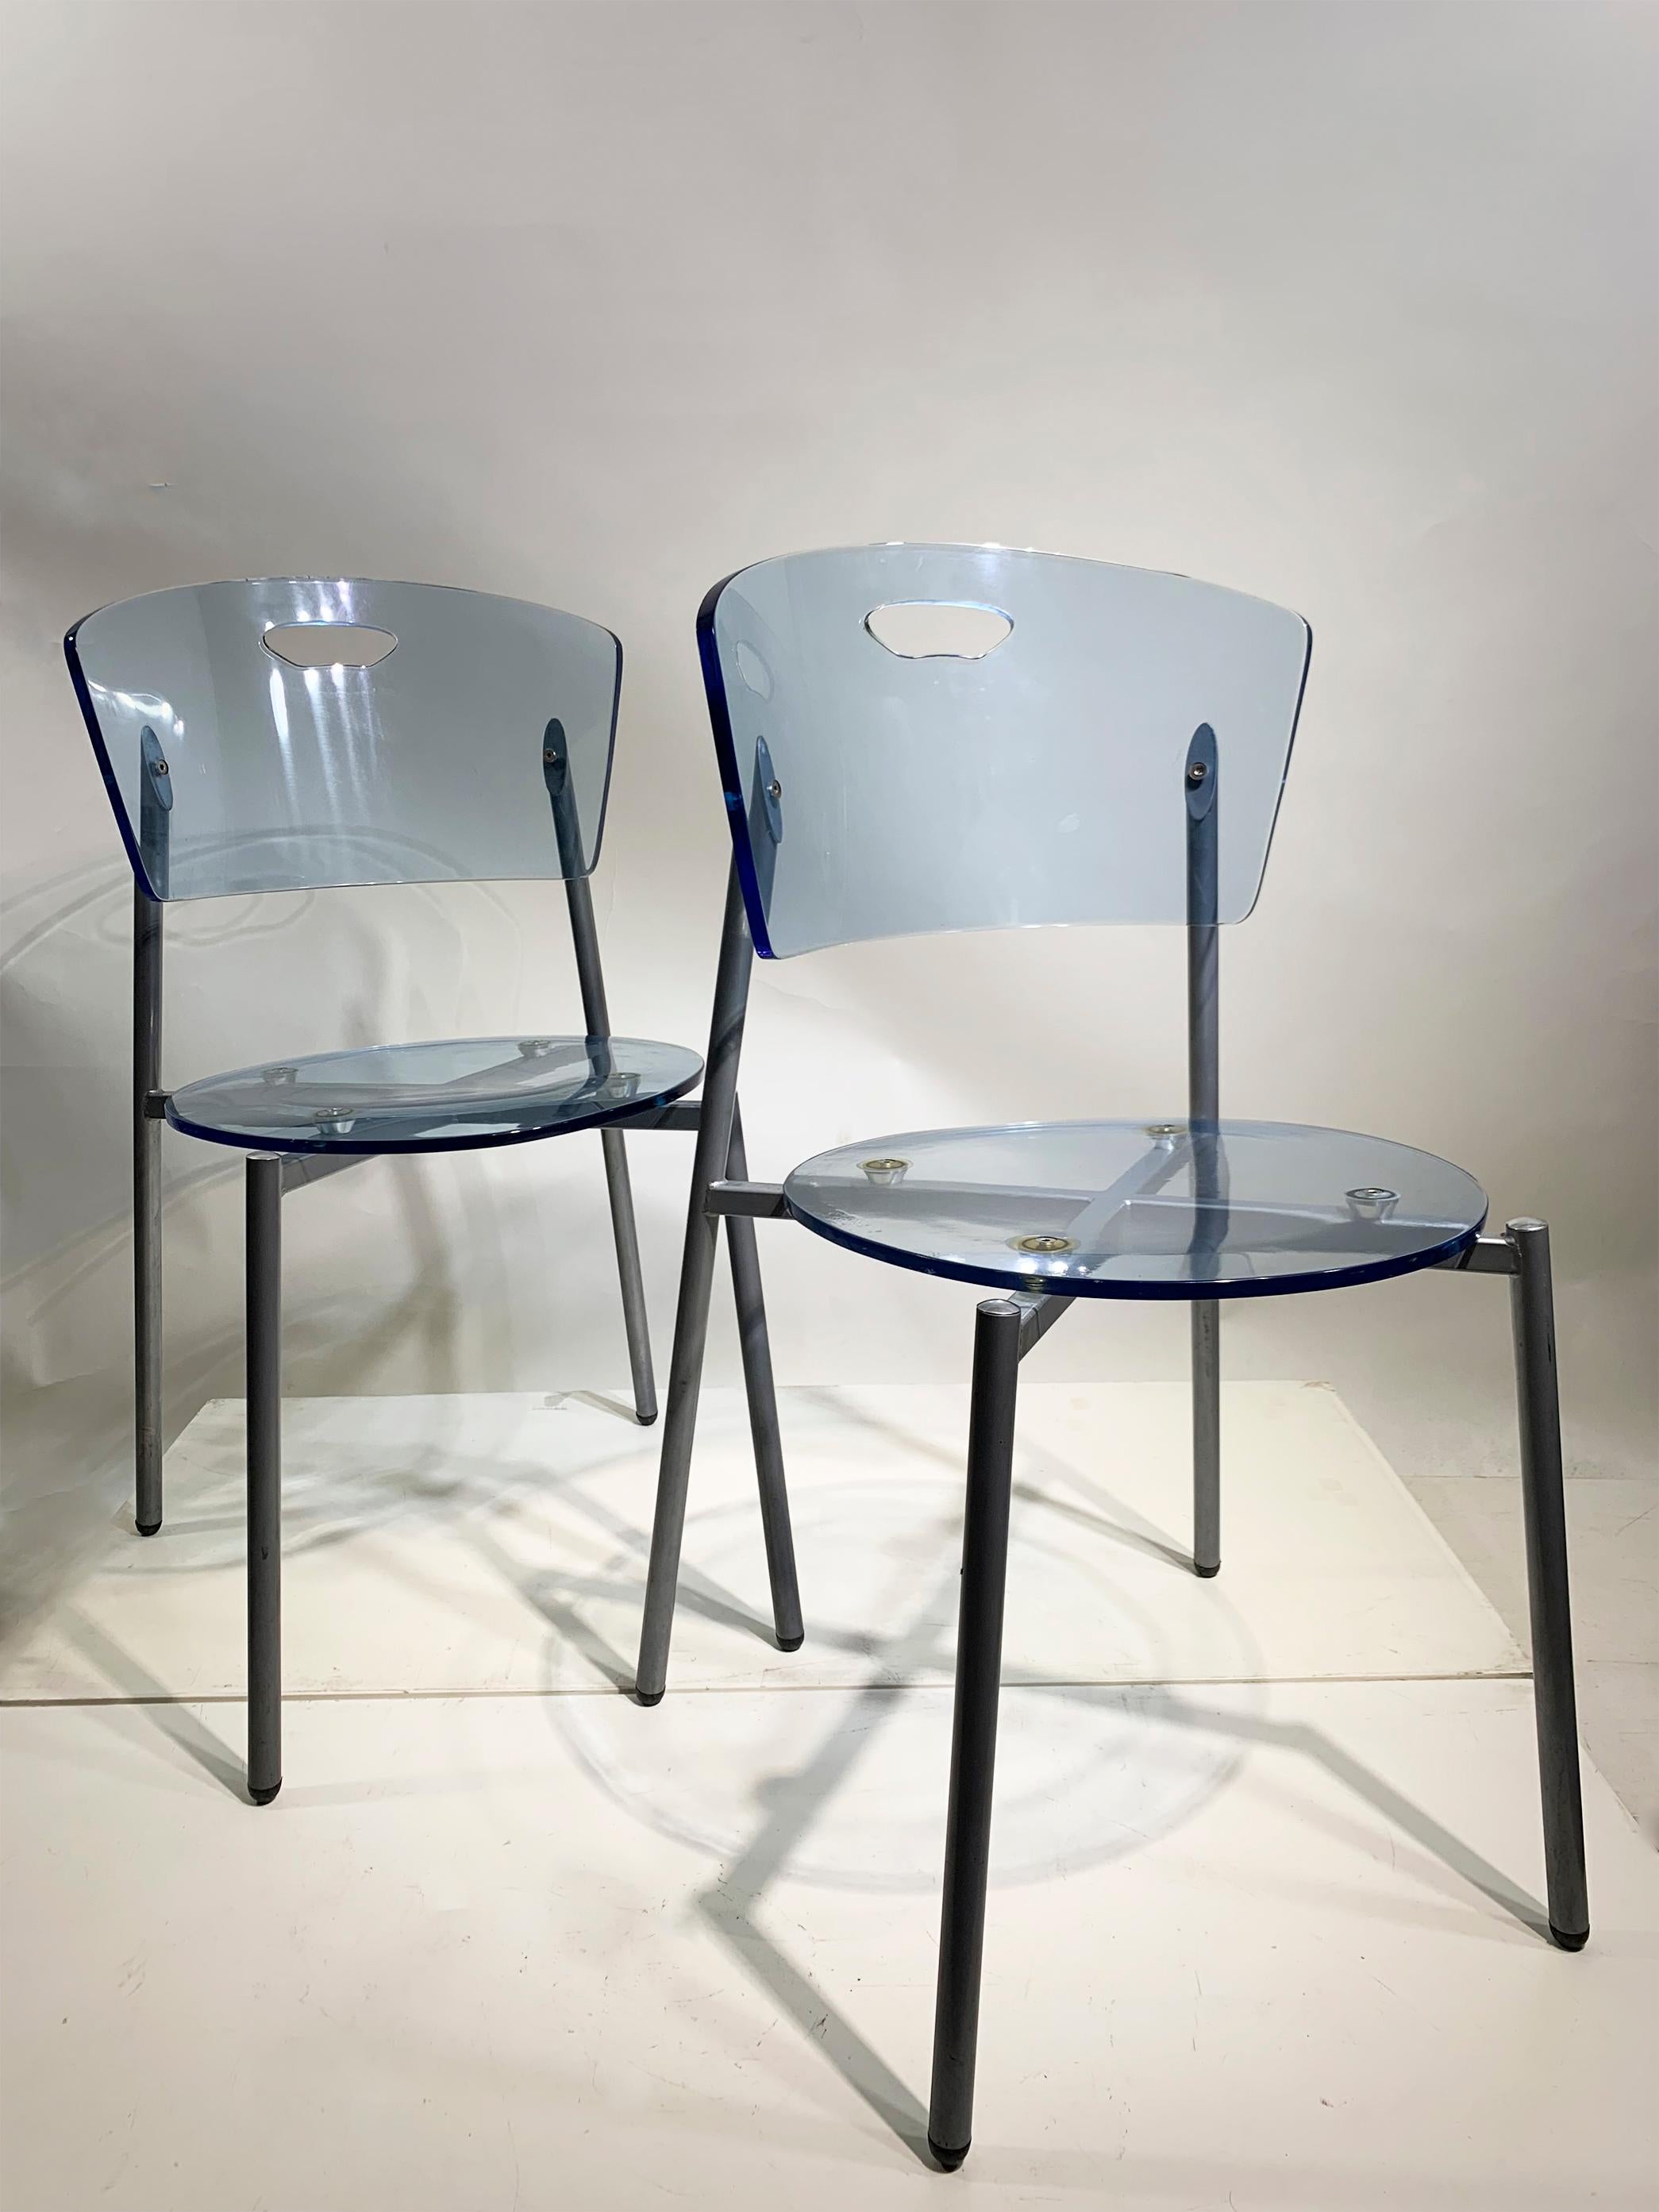 Eine harmonische Mischung aus modernem Design und Funktionalität. Dieser exquisite Stuhl besticht durch seine markant geschwungene Rückenlehne, die sich nahtlos mit dem abgerundeten, blauen, undurchsichtigen Kunststoffsitz verbindet und so eine